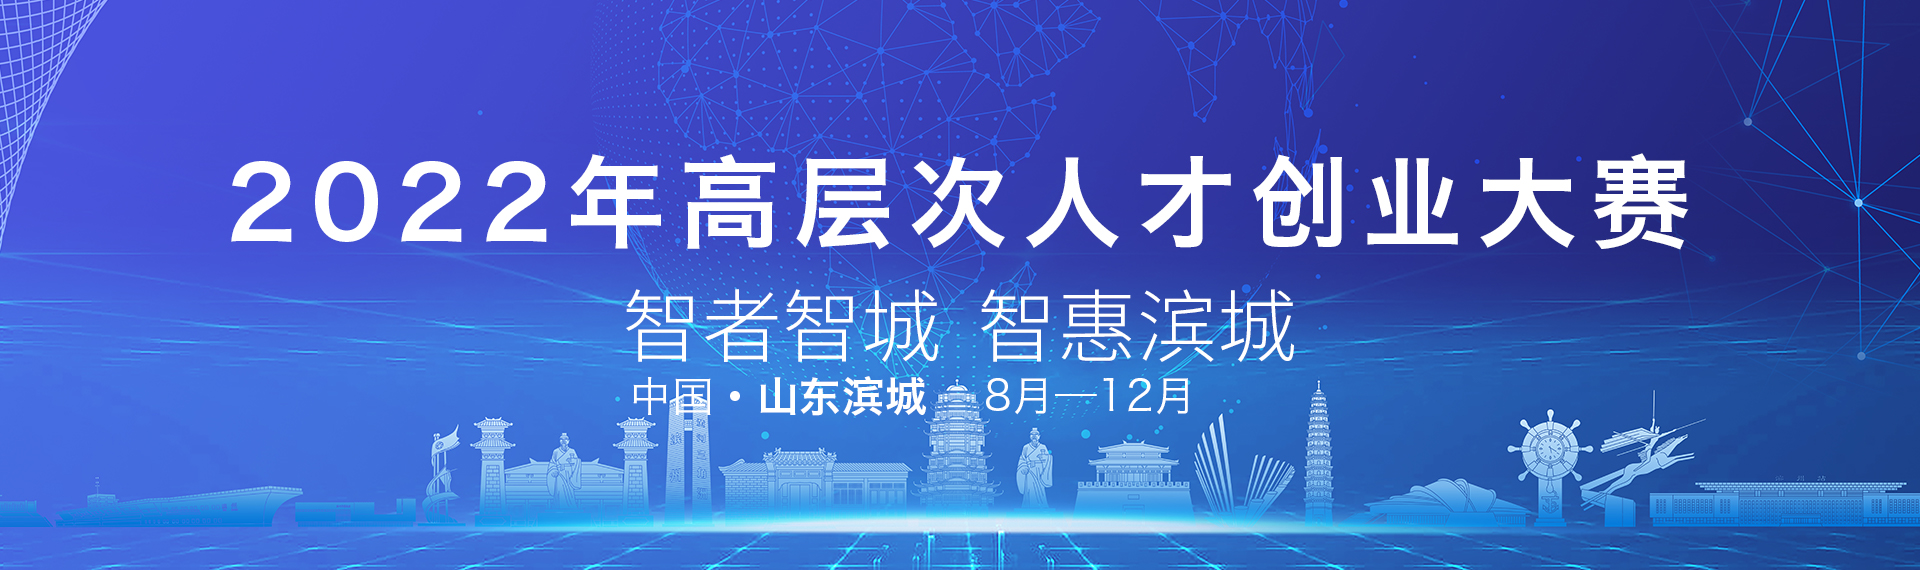 2022年“智者智城·智惠滨城”高层次人才创业大赛